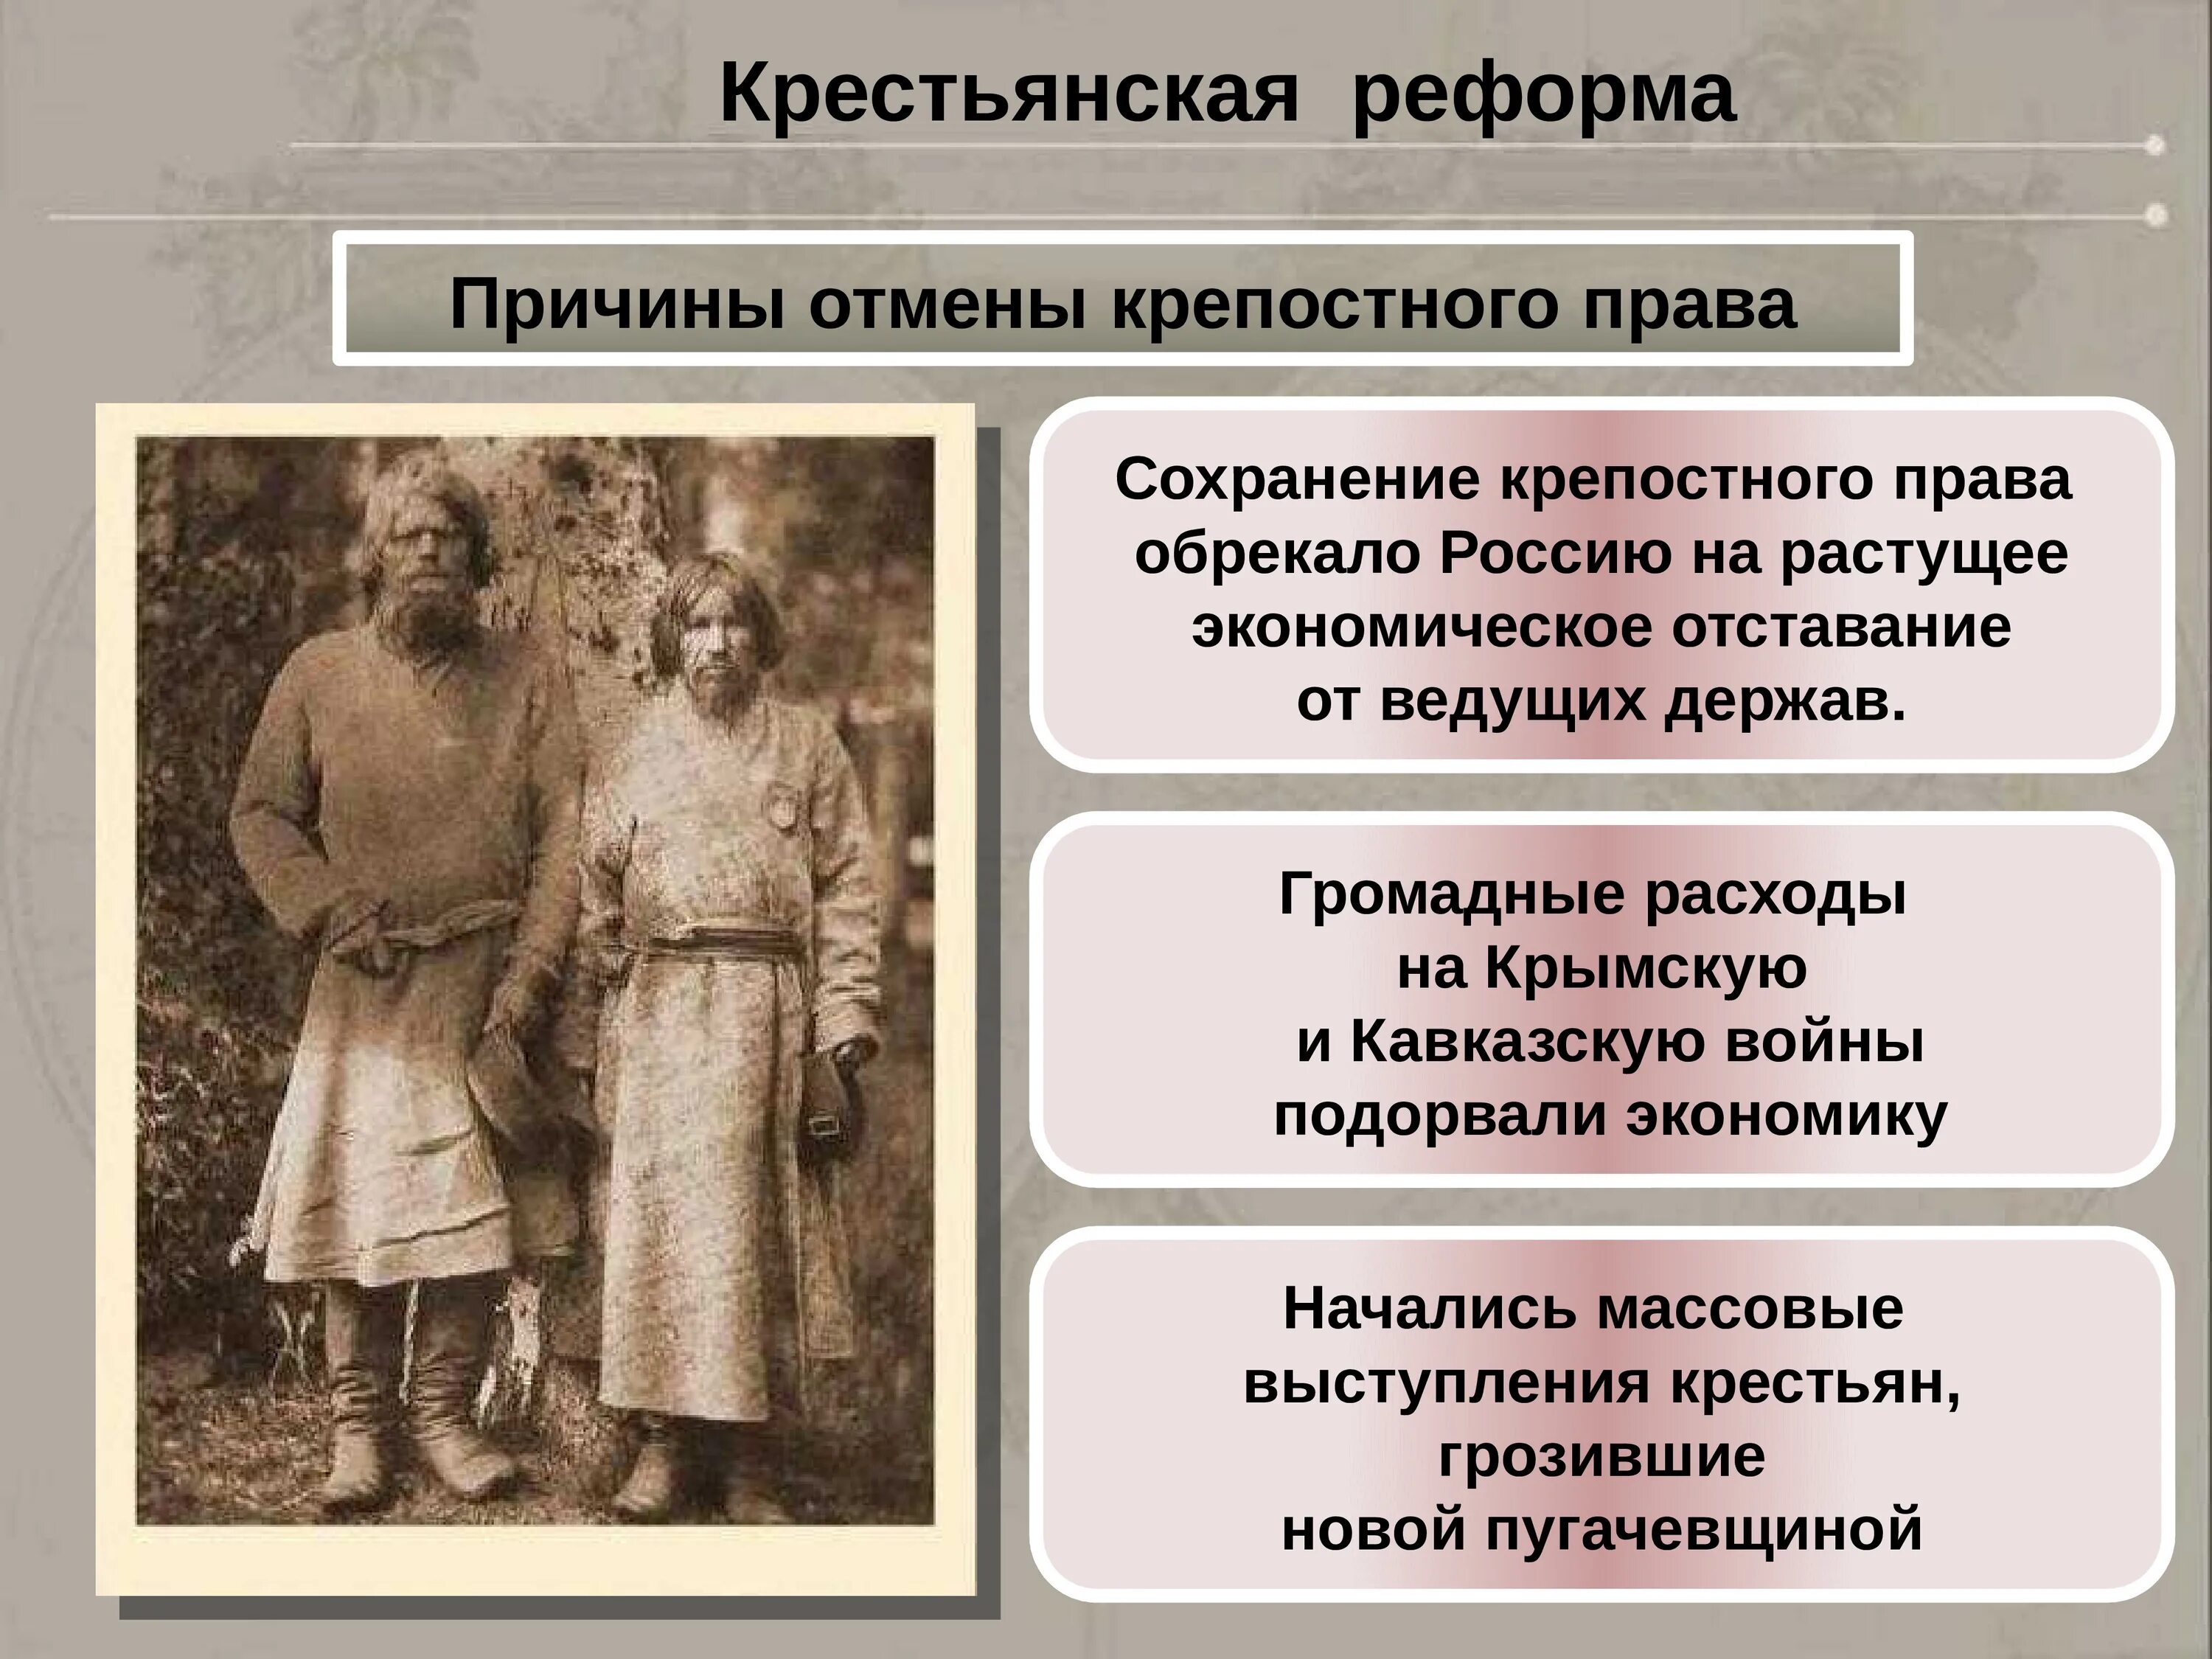 Крепостное право в России 19 века. Крестьянская реформа изменения